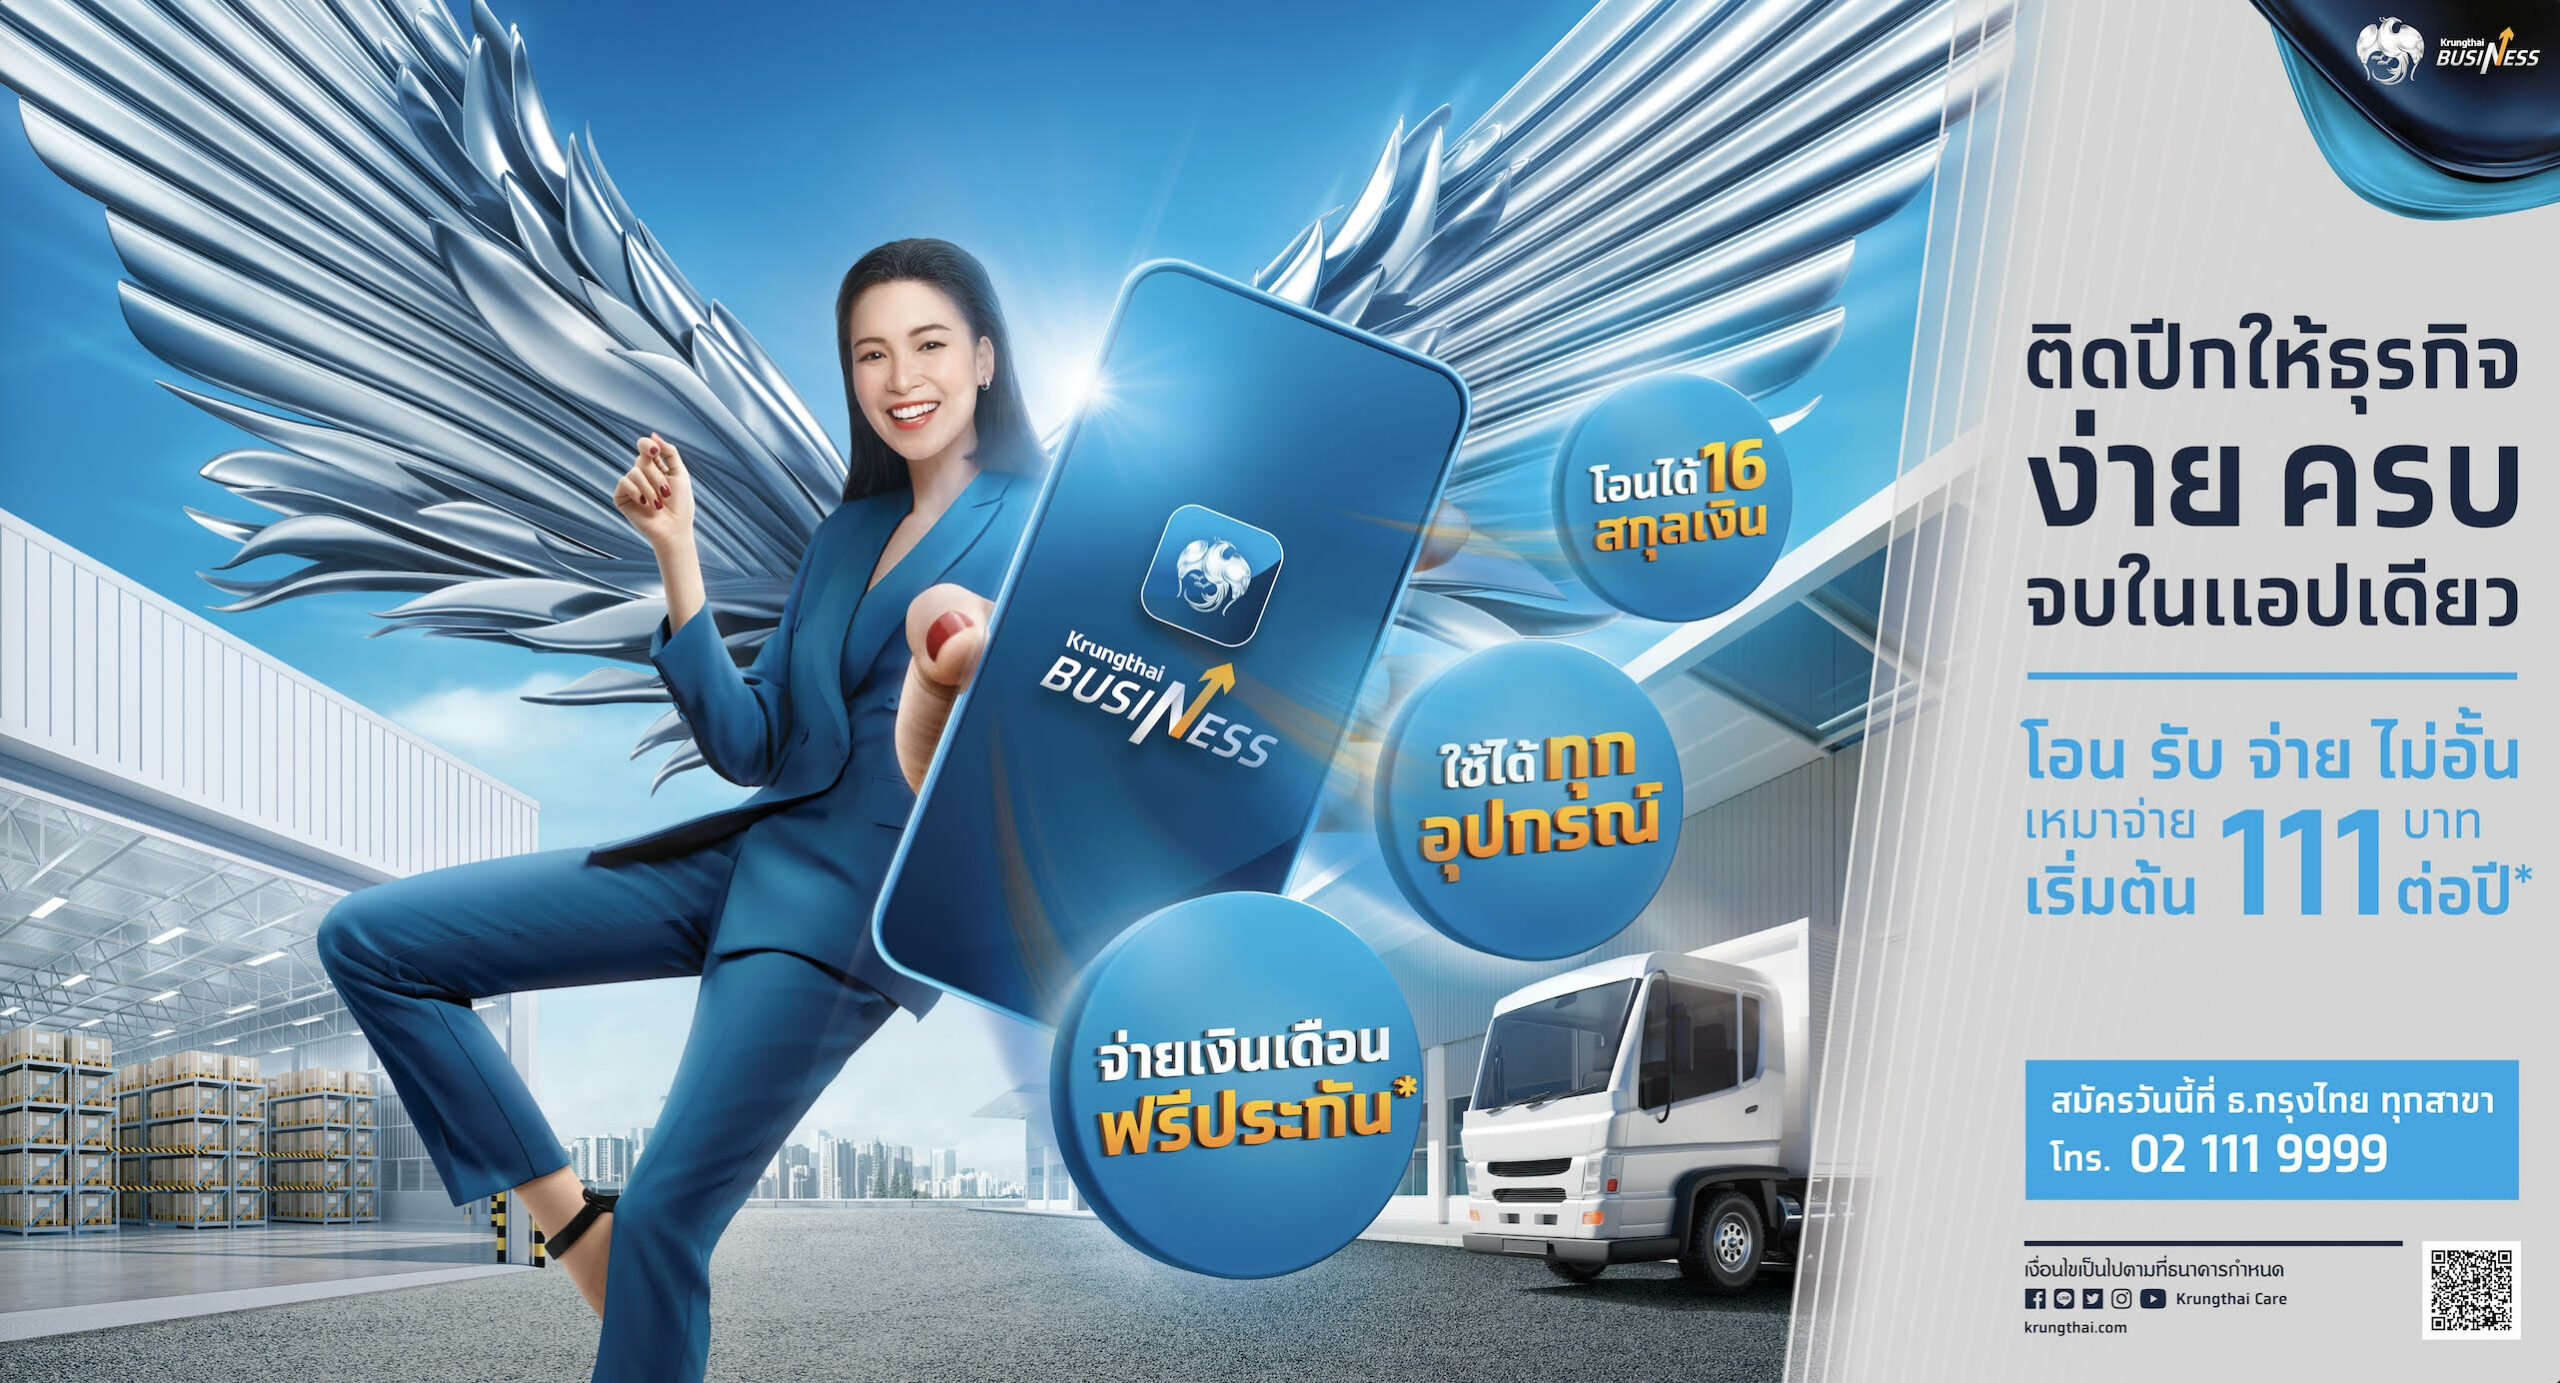 กรุงไทยเปิดตัวแอปฯ “Krungthai Business”